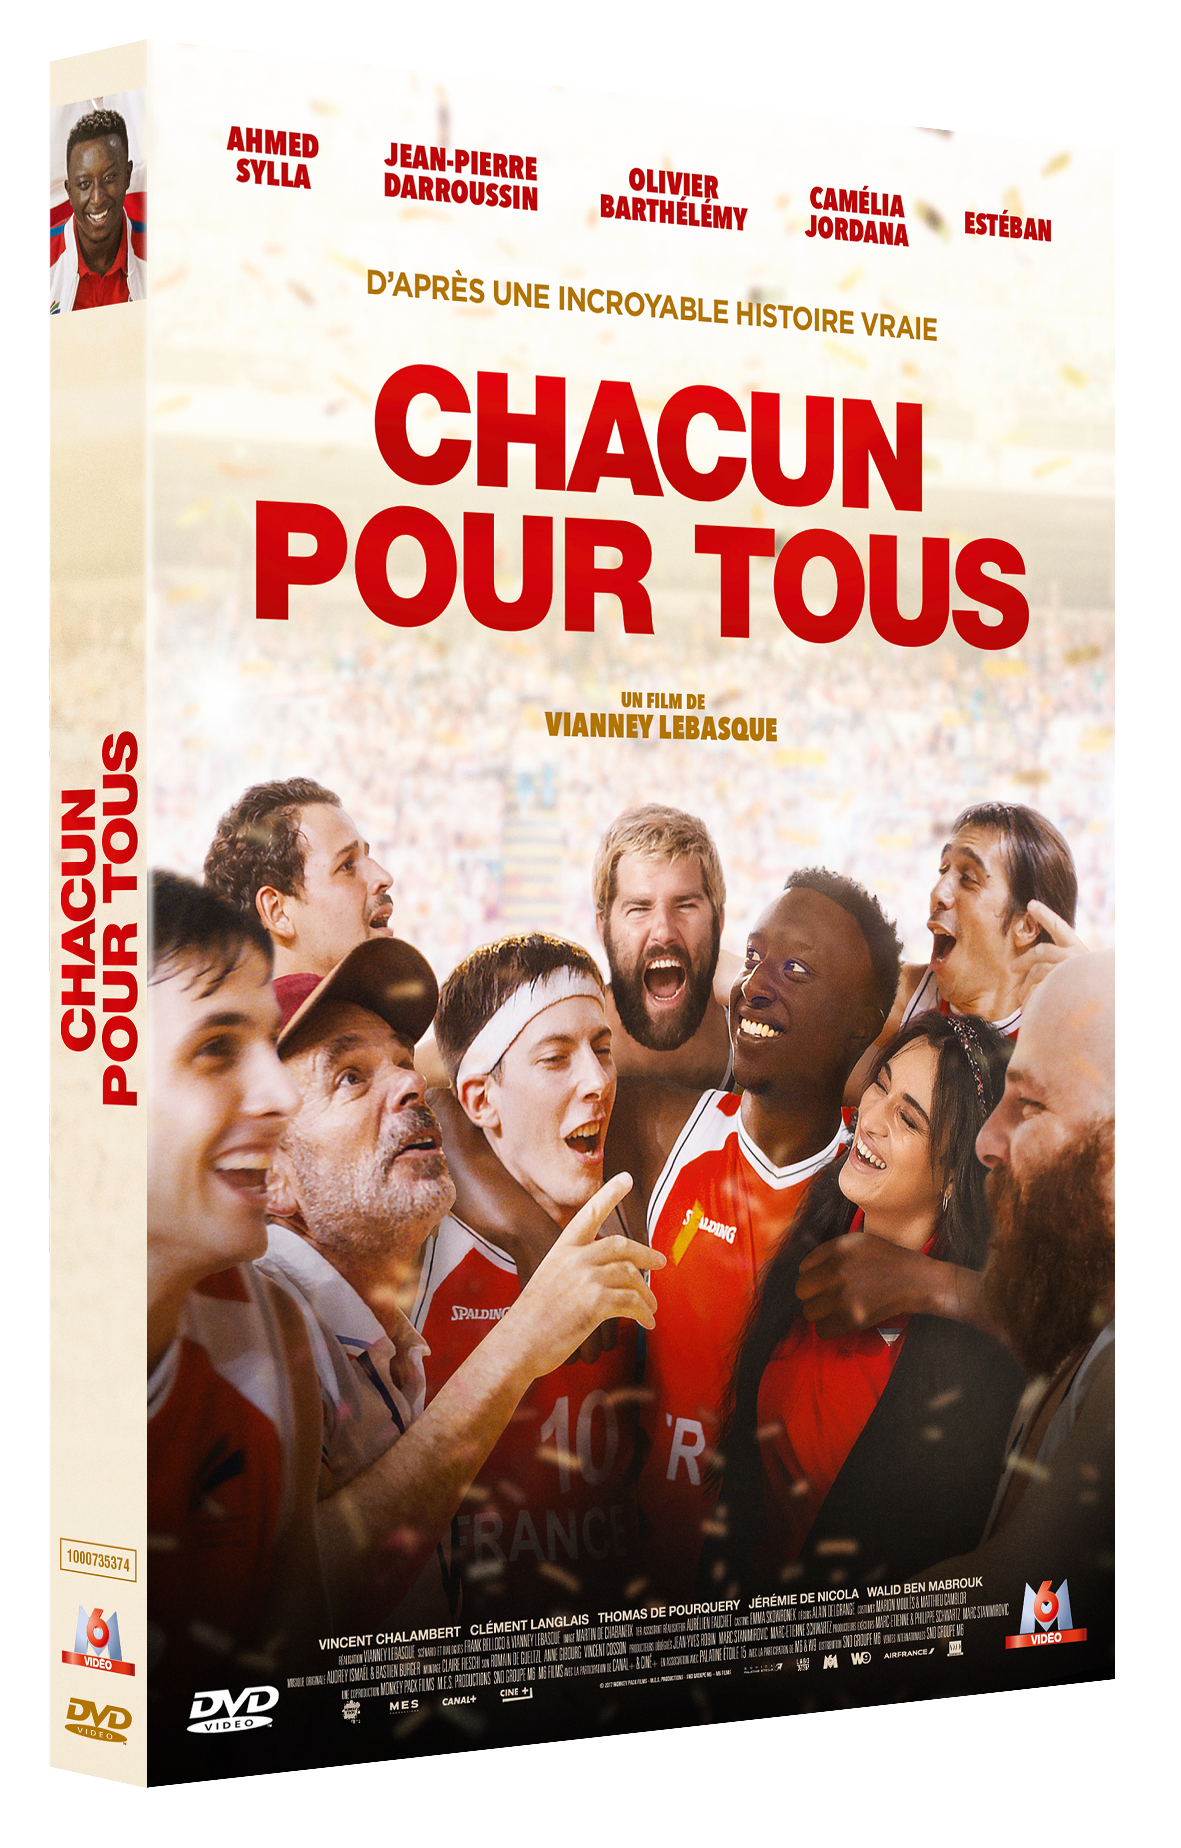 CHACUN POUR TOUS (Concours) 3 DVD à gagner Chacun-pour-tous_3d